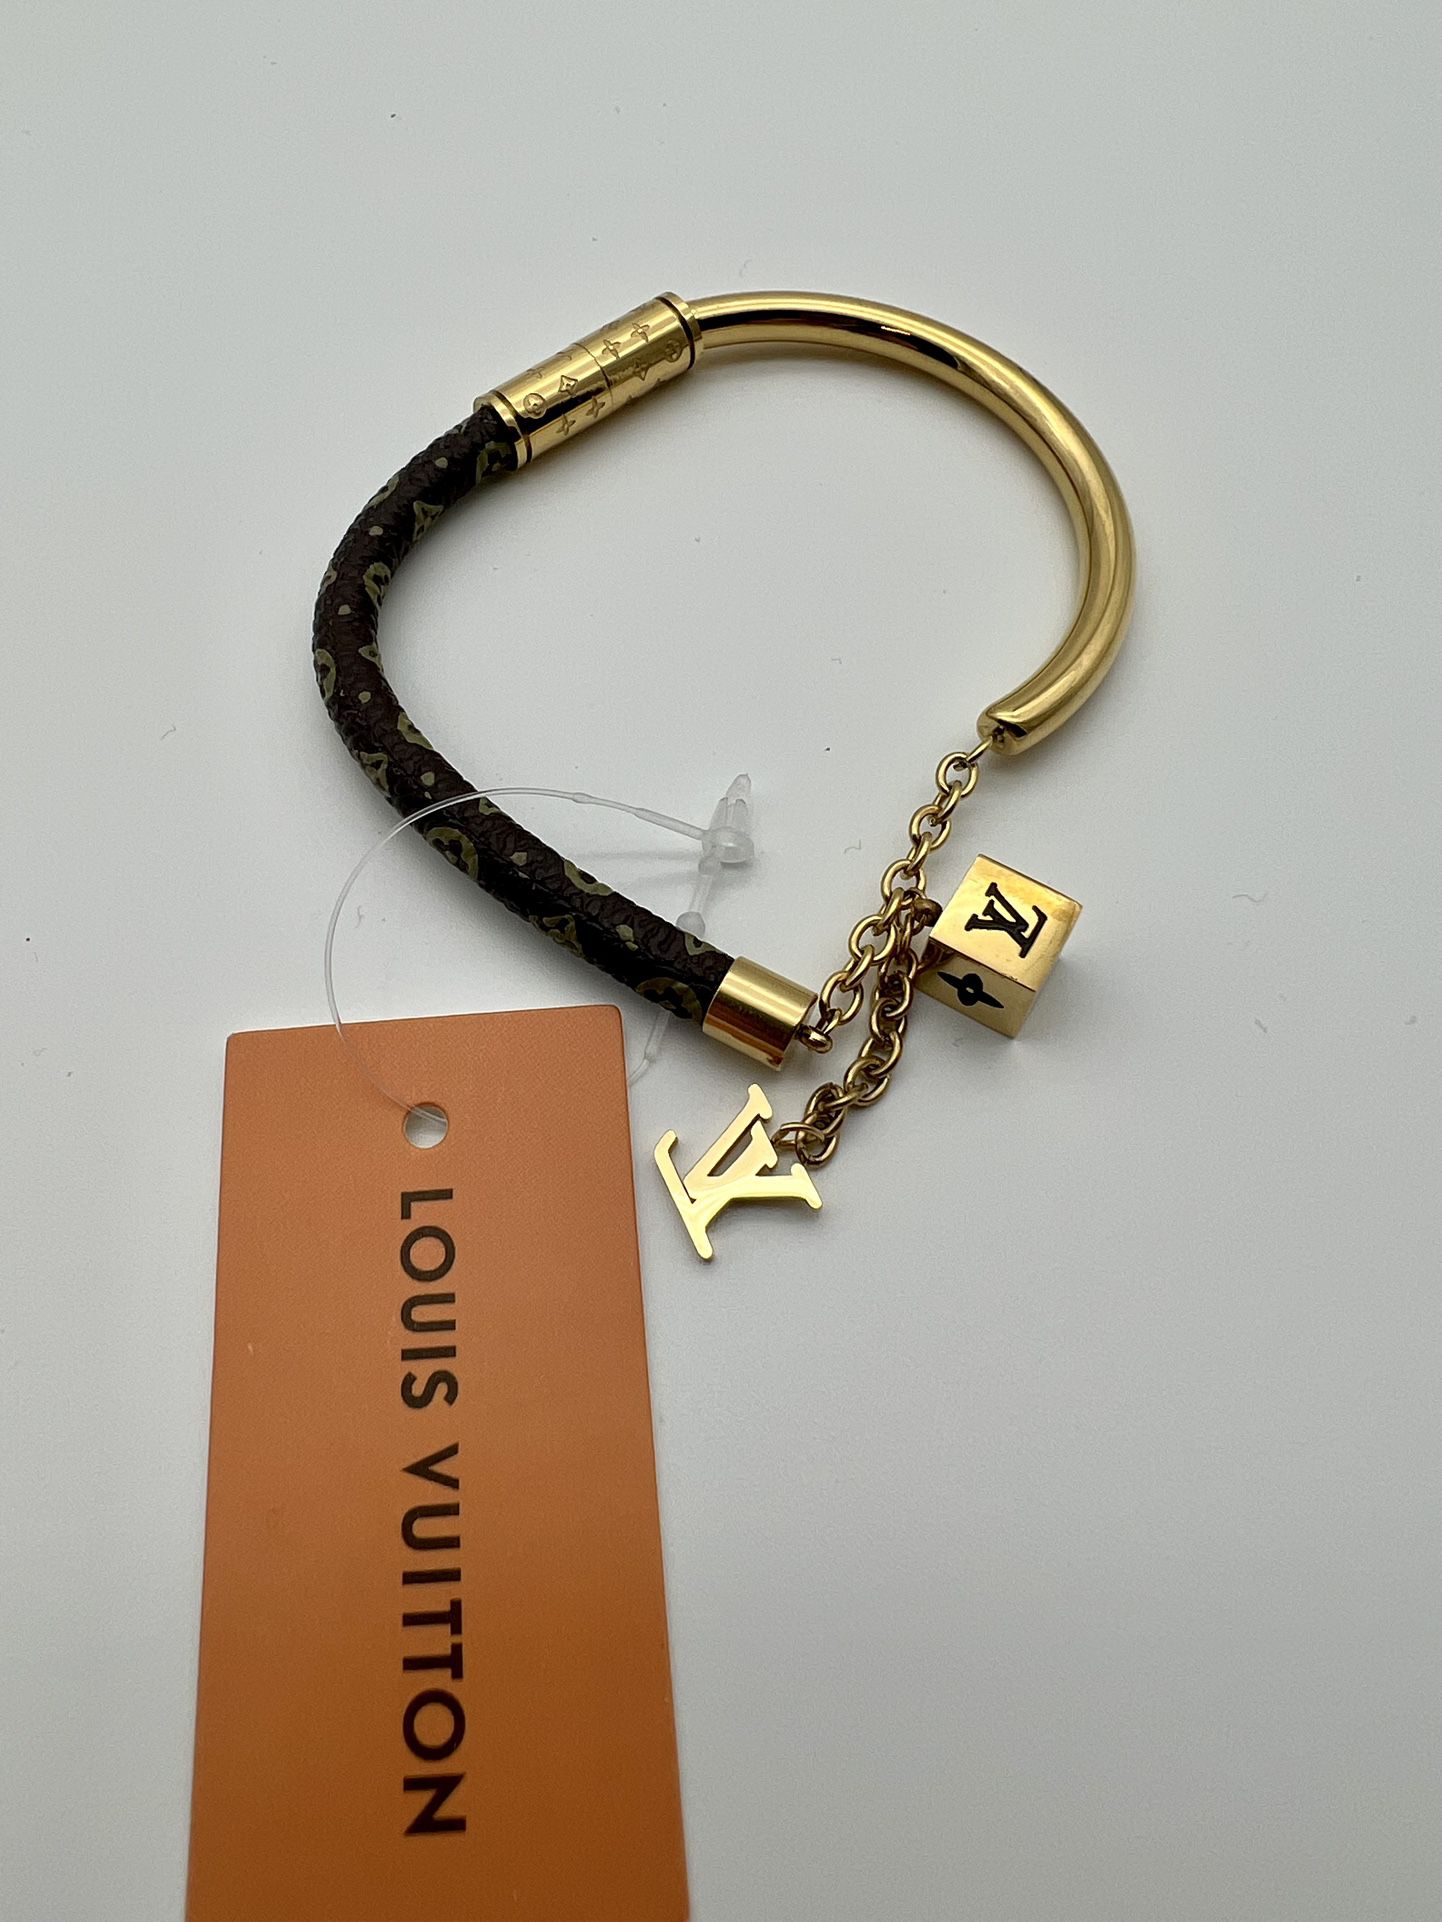 Louis Vuitton Charm Bracelet for Sale in Hialeah, FL - OfferUp